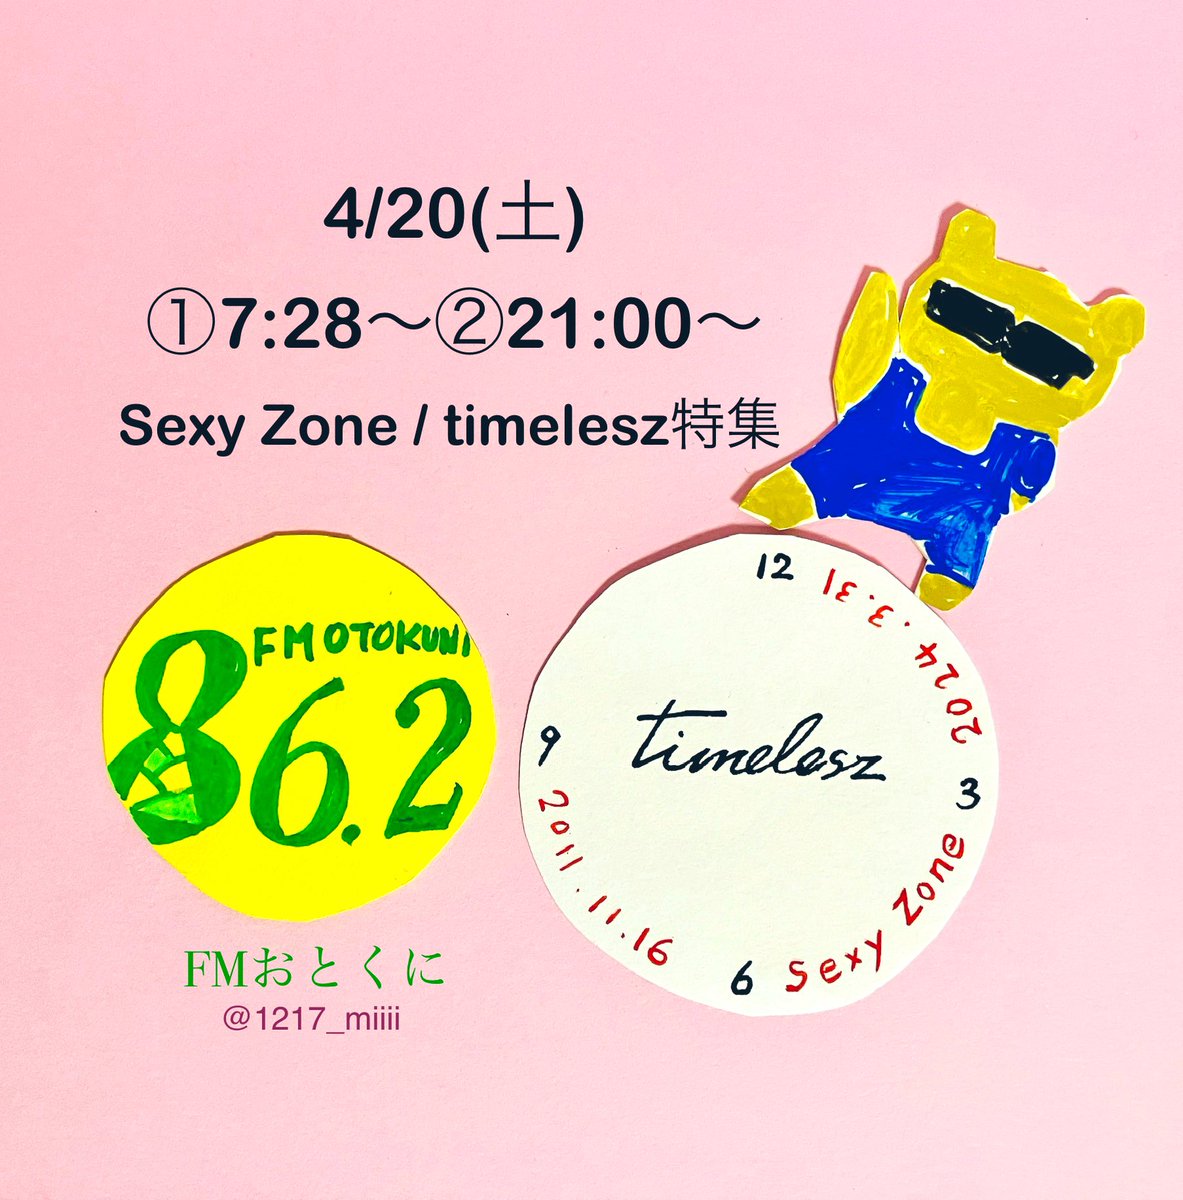 明日4/20(土)①7:28〜②21:00〜
#FMおとくに さんで 
#timelesz/#SexyZone 特集！！
ノンストップで沢山楽曲が流れます^_^

無料アプリ #リスラジ をDLすれば
全国どなたでも聴けます♪
⇨apps.apple.com/jp/app/listenr…

#ラジオ #コミュニティFM